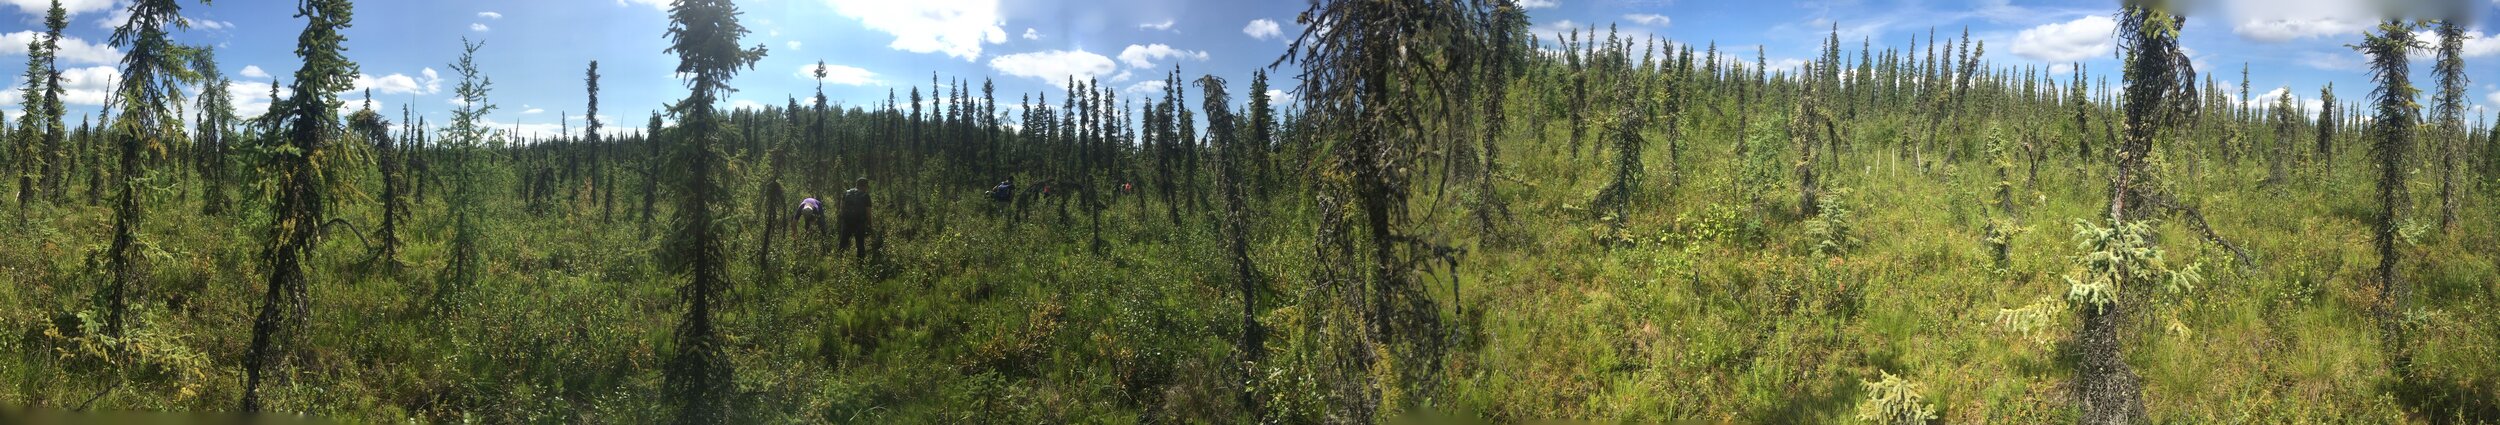 Permafrost Landscape scene near Fairbanks, AK